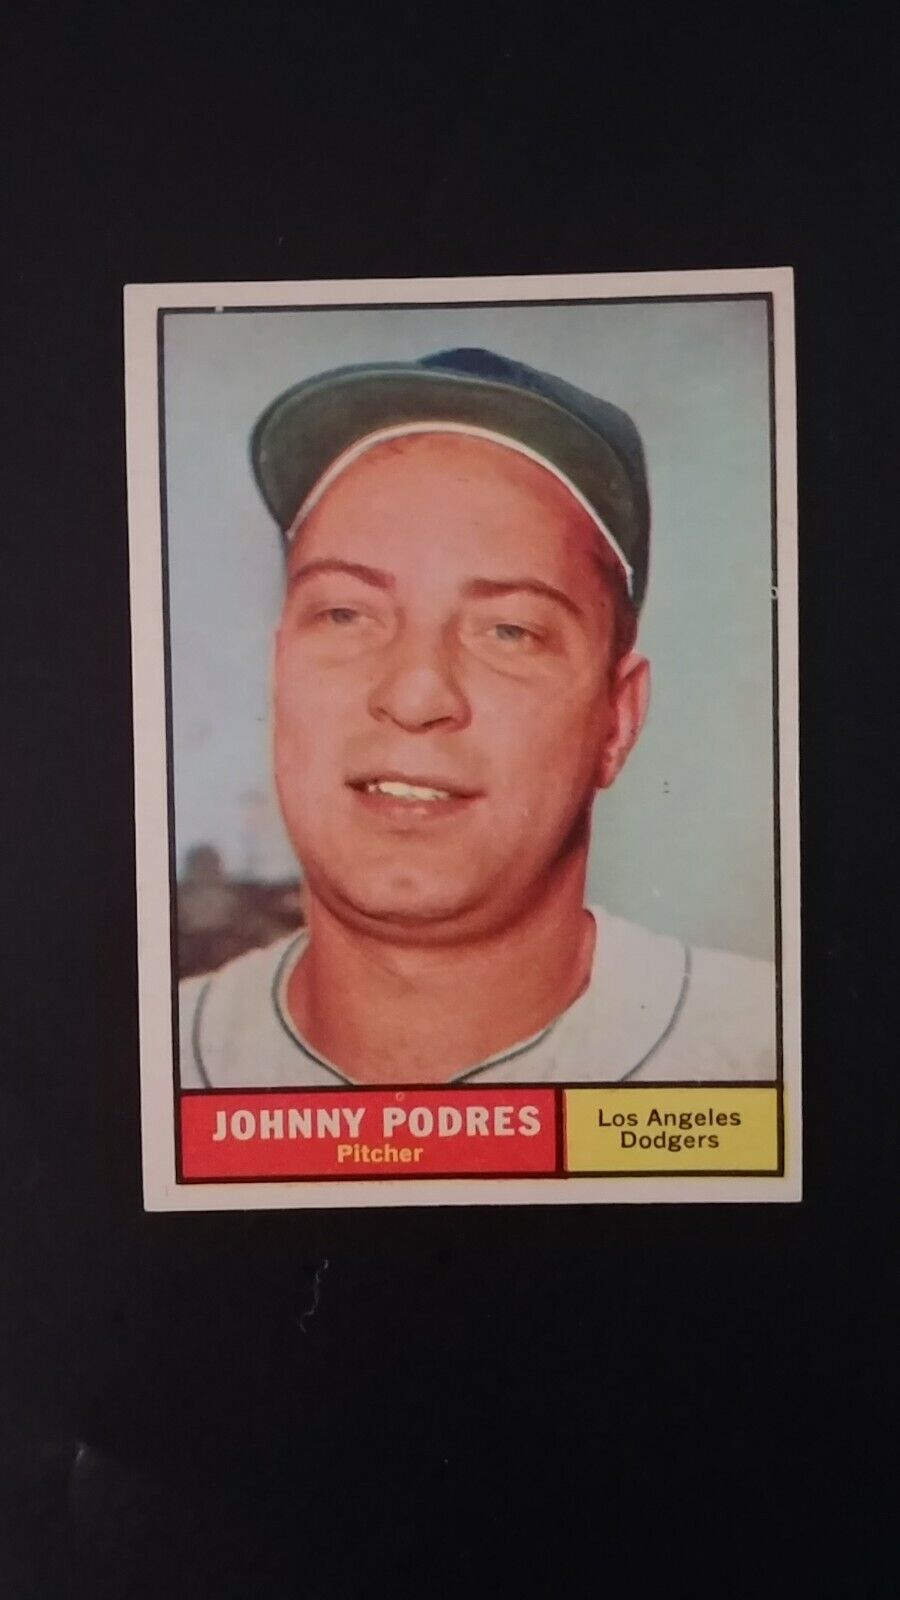 1961 Topps baseball card # 109 Johnny Podres